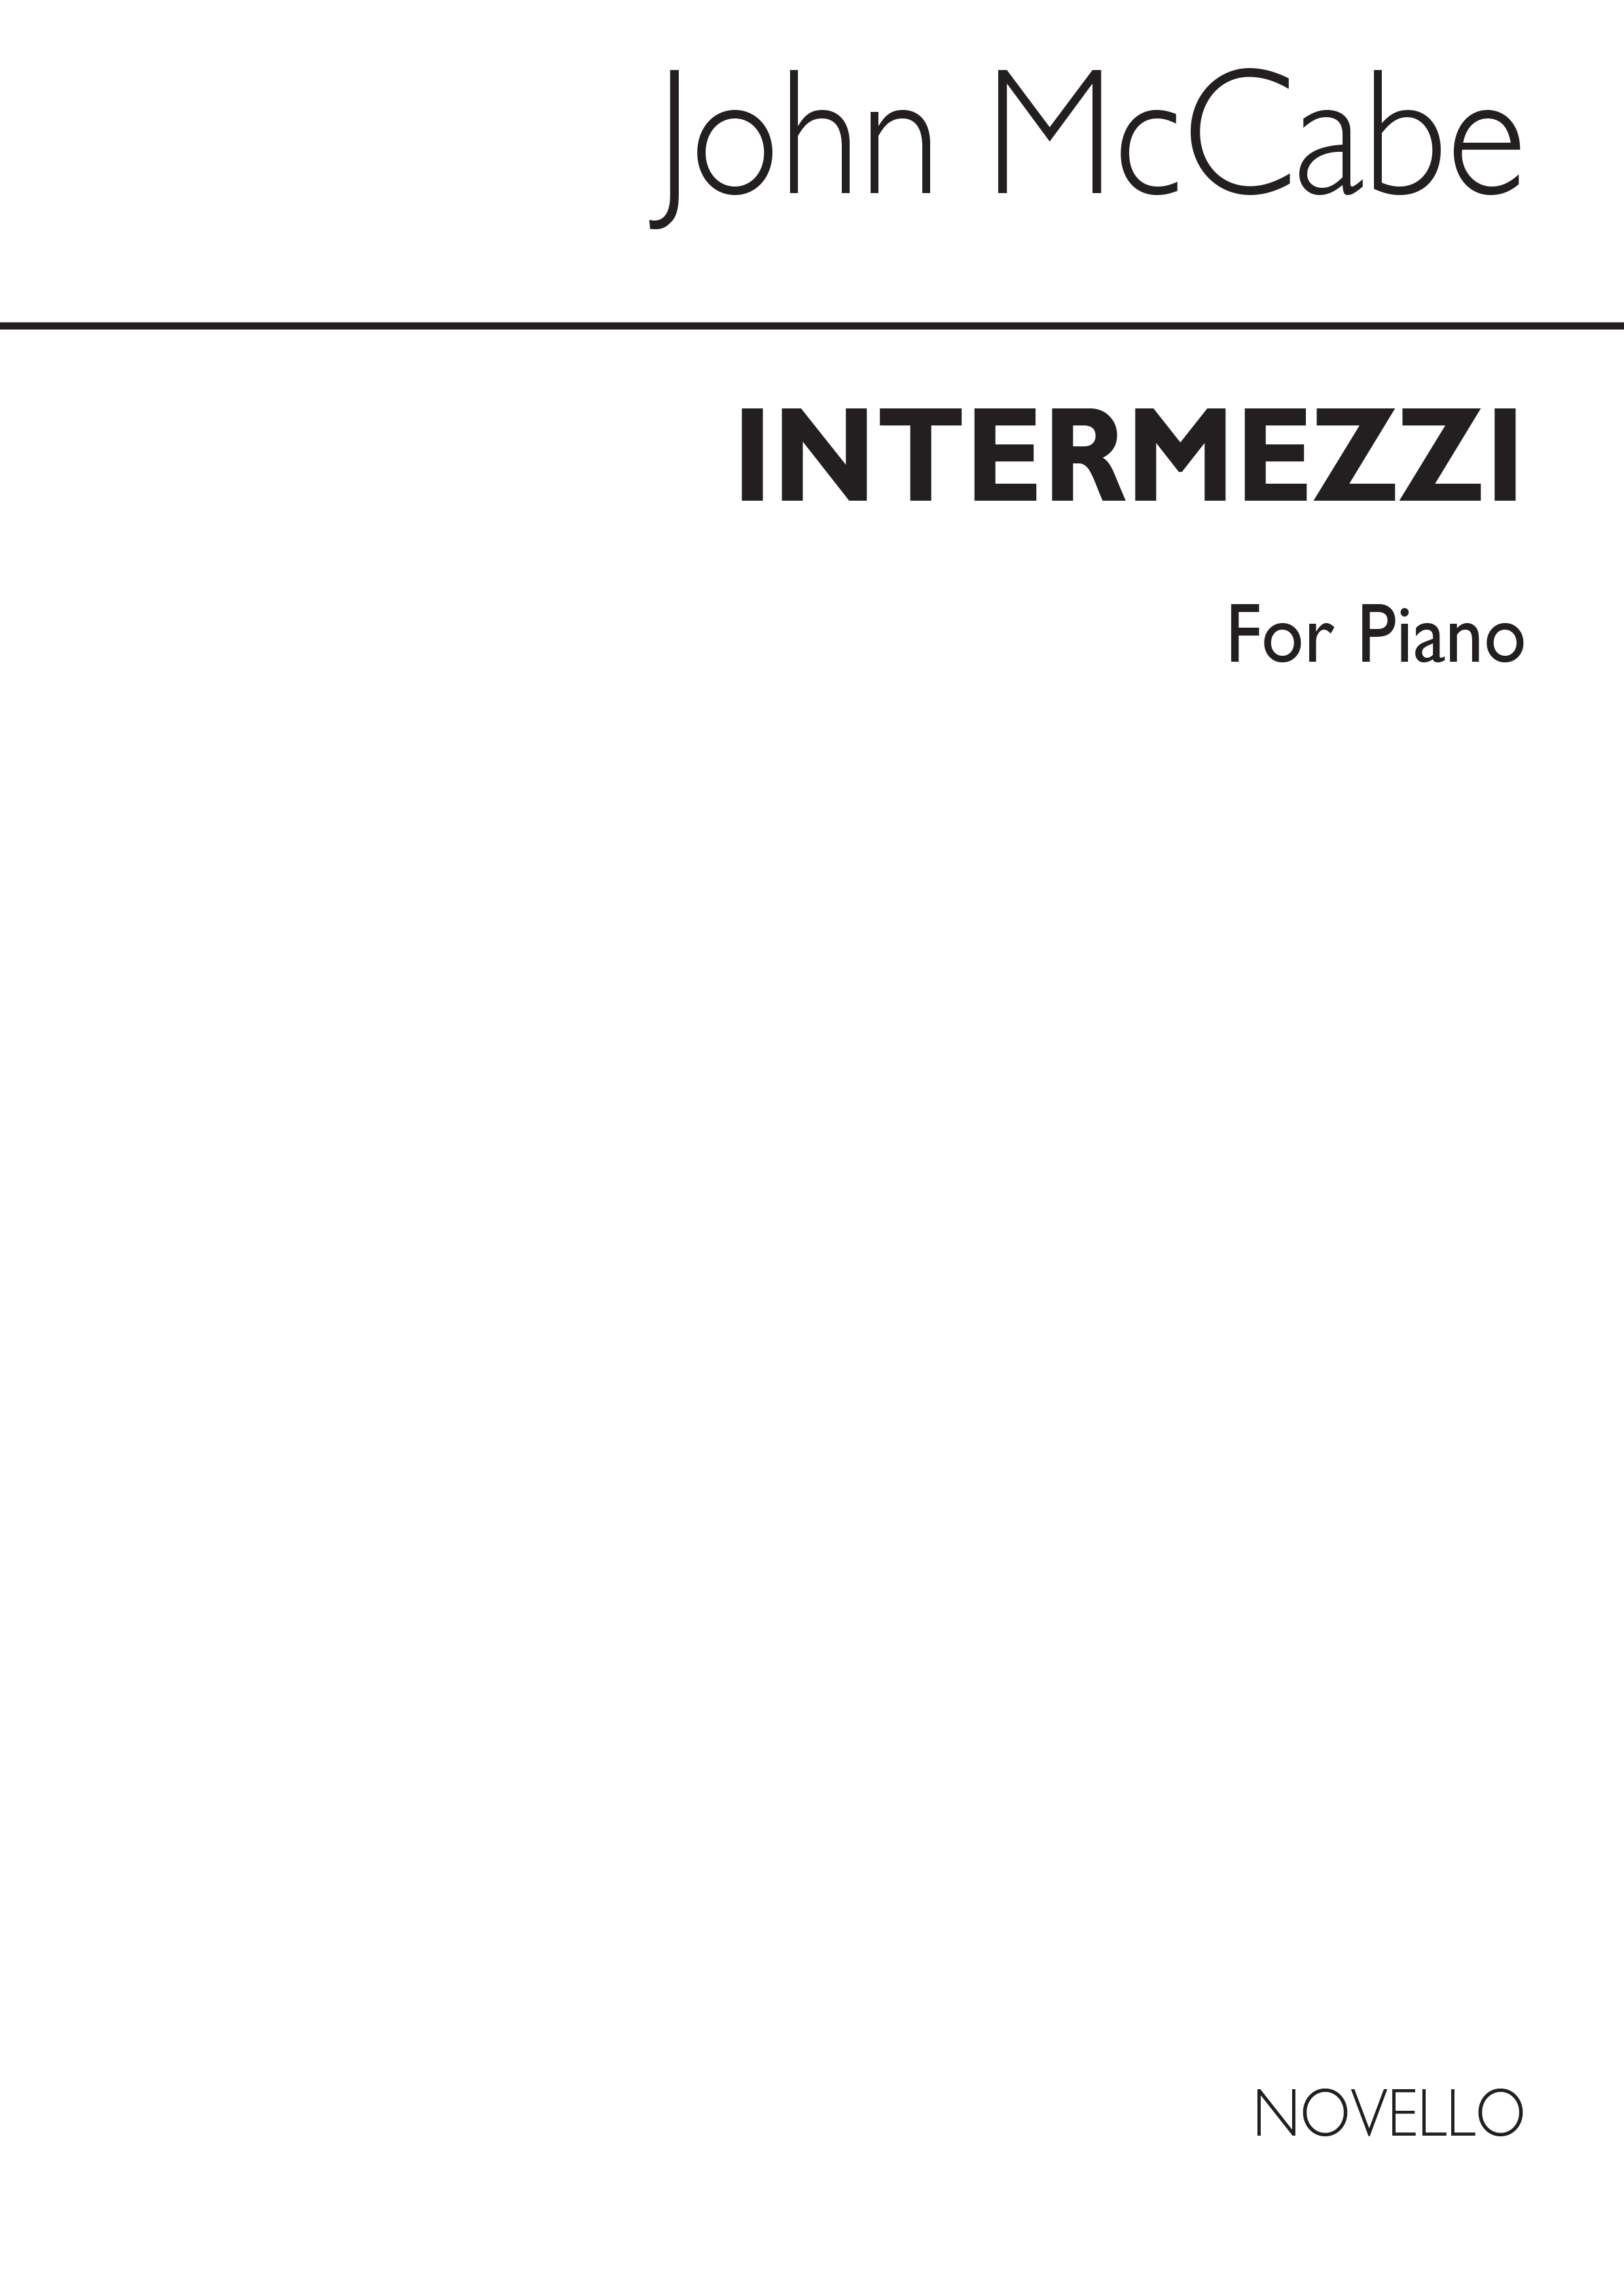 McCabe: Intermezzi for Piano